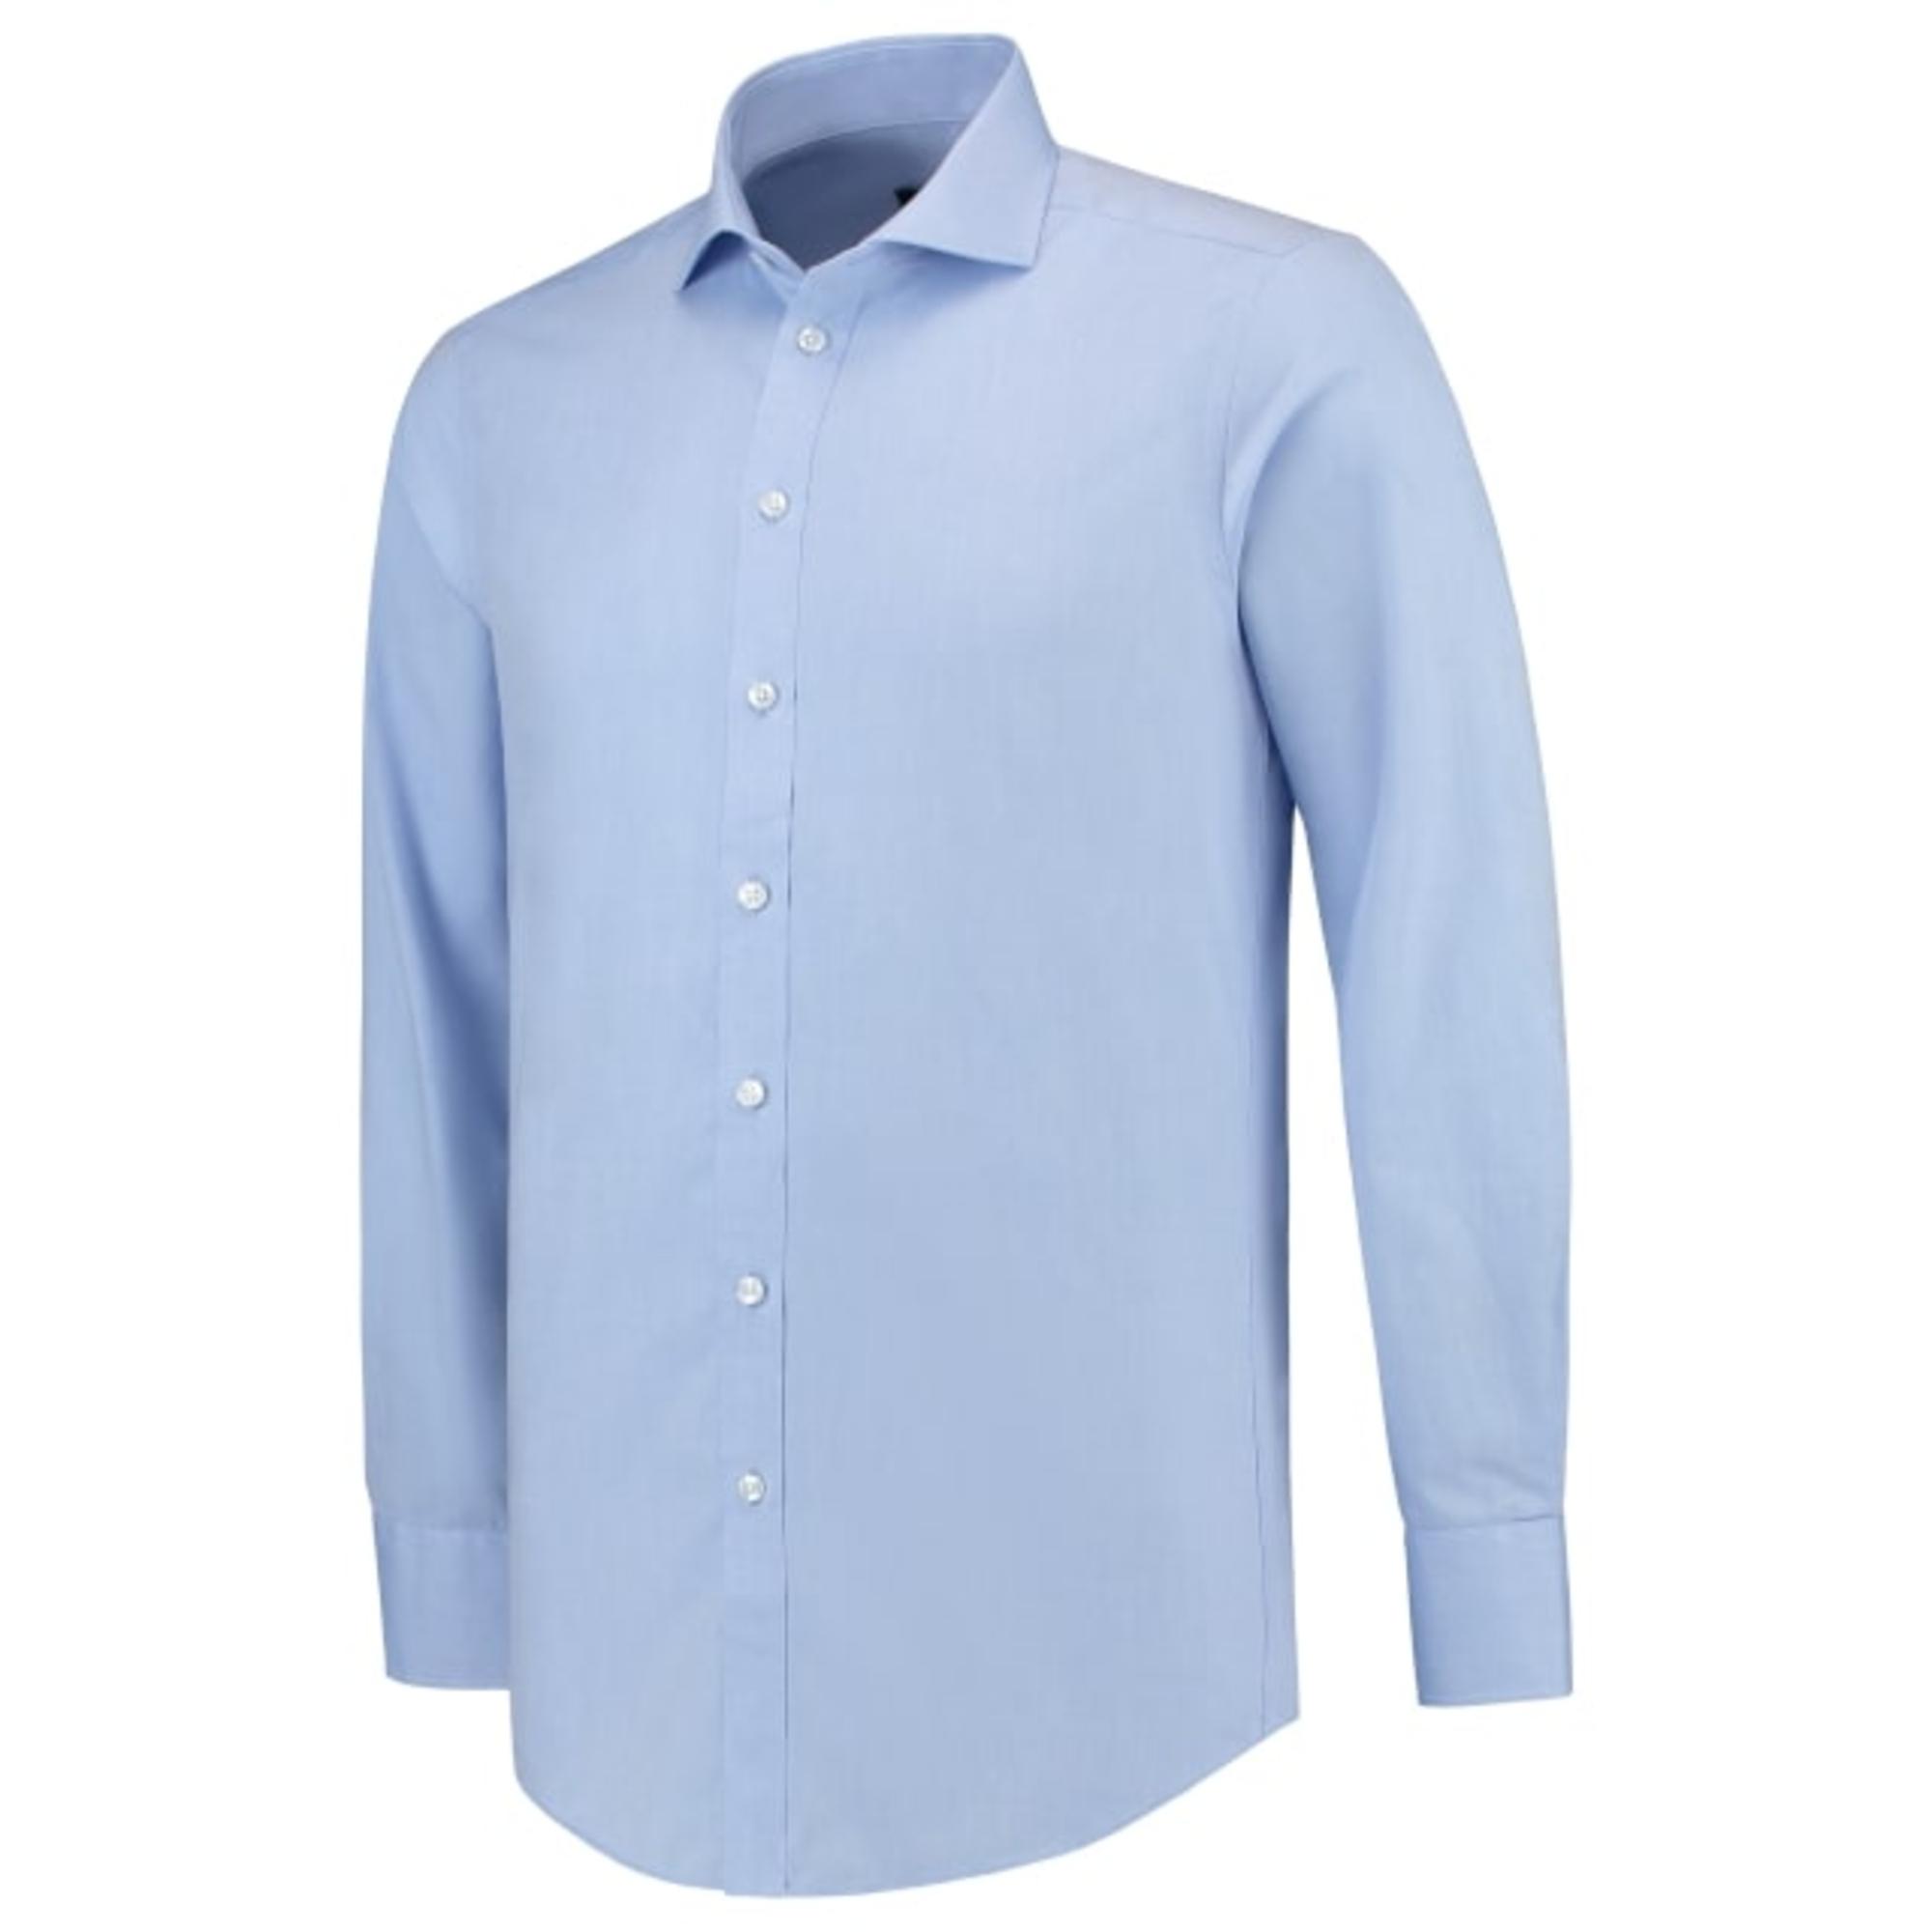 Cămaşă pentru bărbaţi Fitted Shirt T21 blue